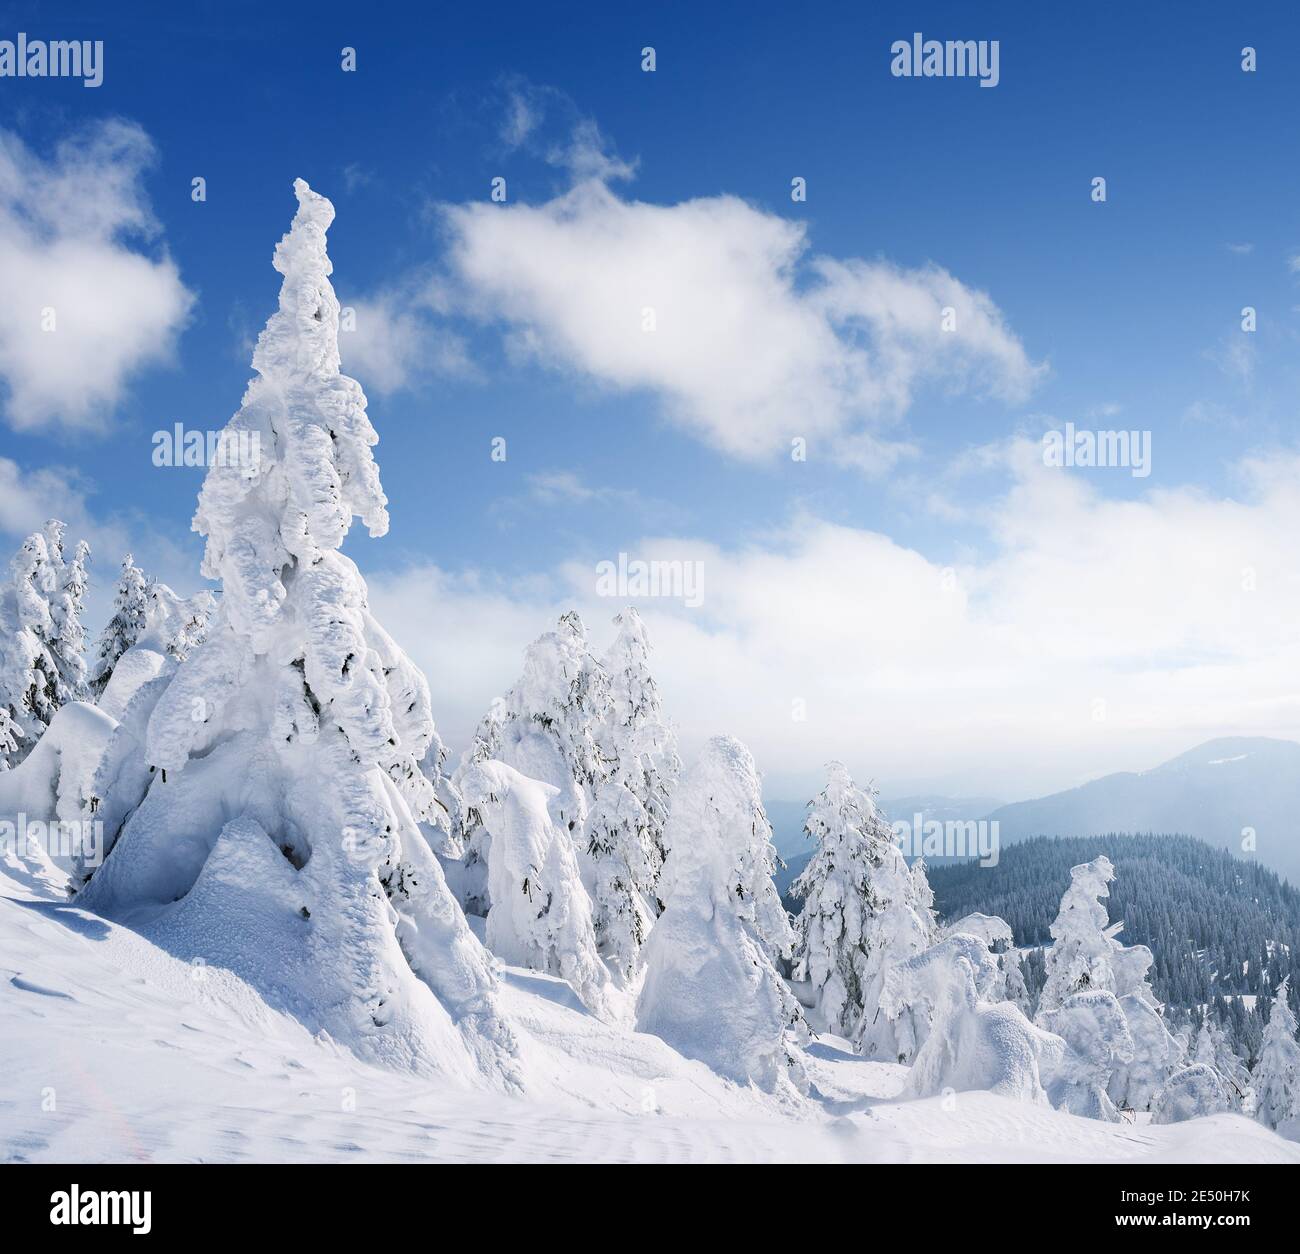 Paysage d'hiver avec des sapins enneigés dans les montagnes une journée ensoleillée après une chute de neige Banque D'Images